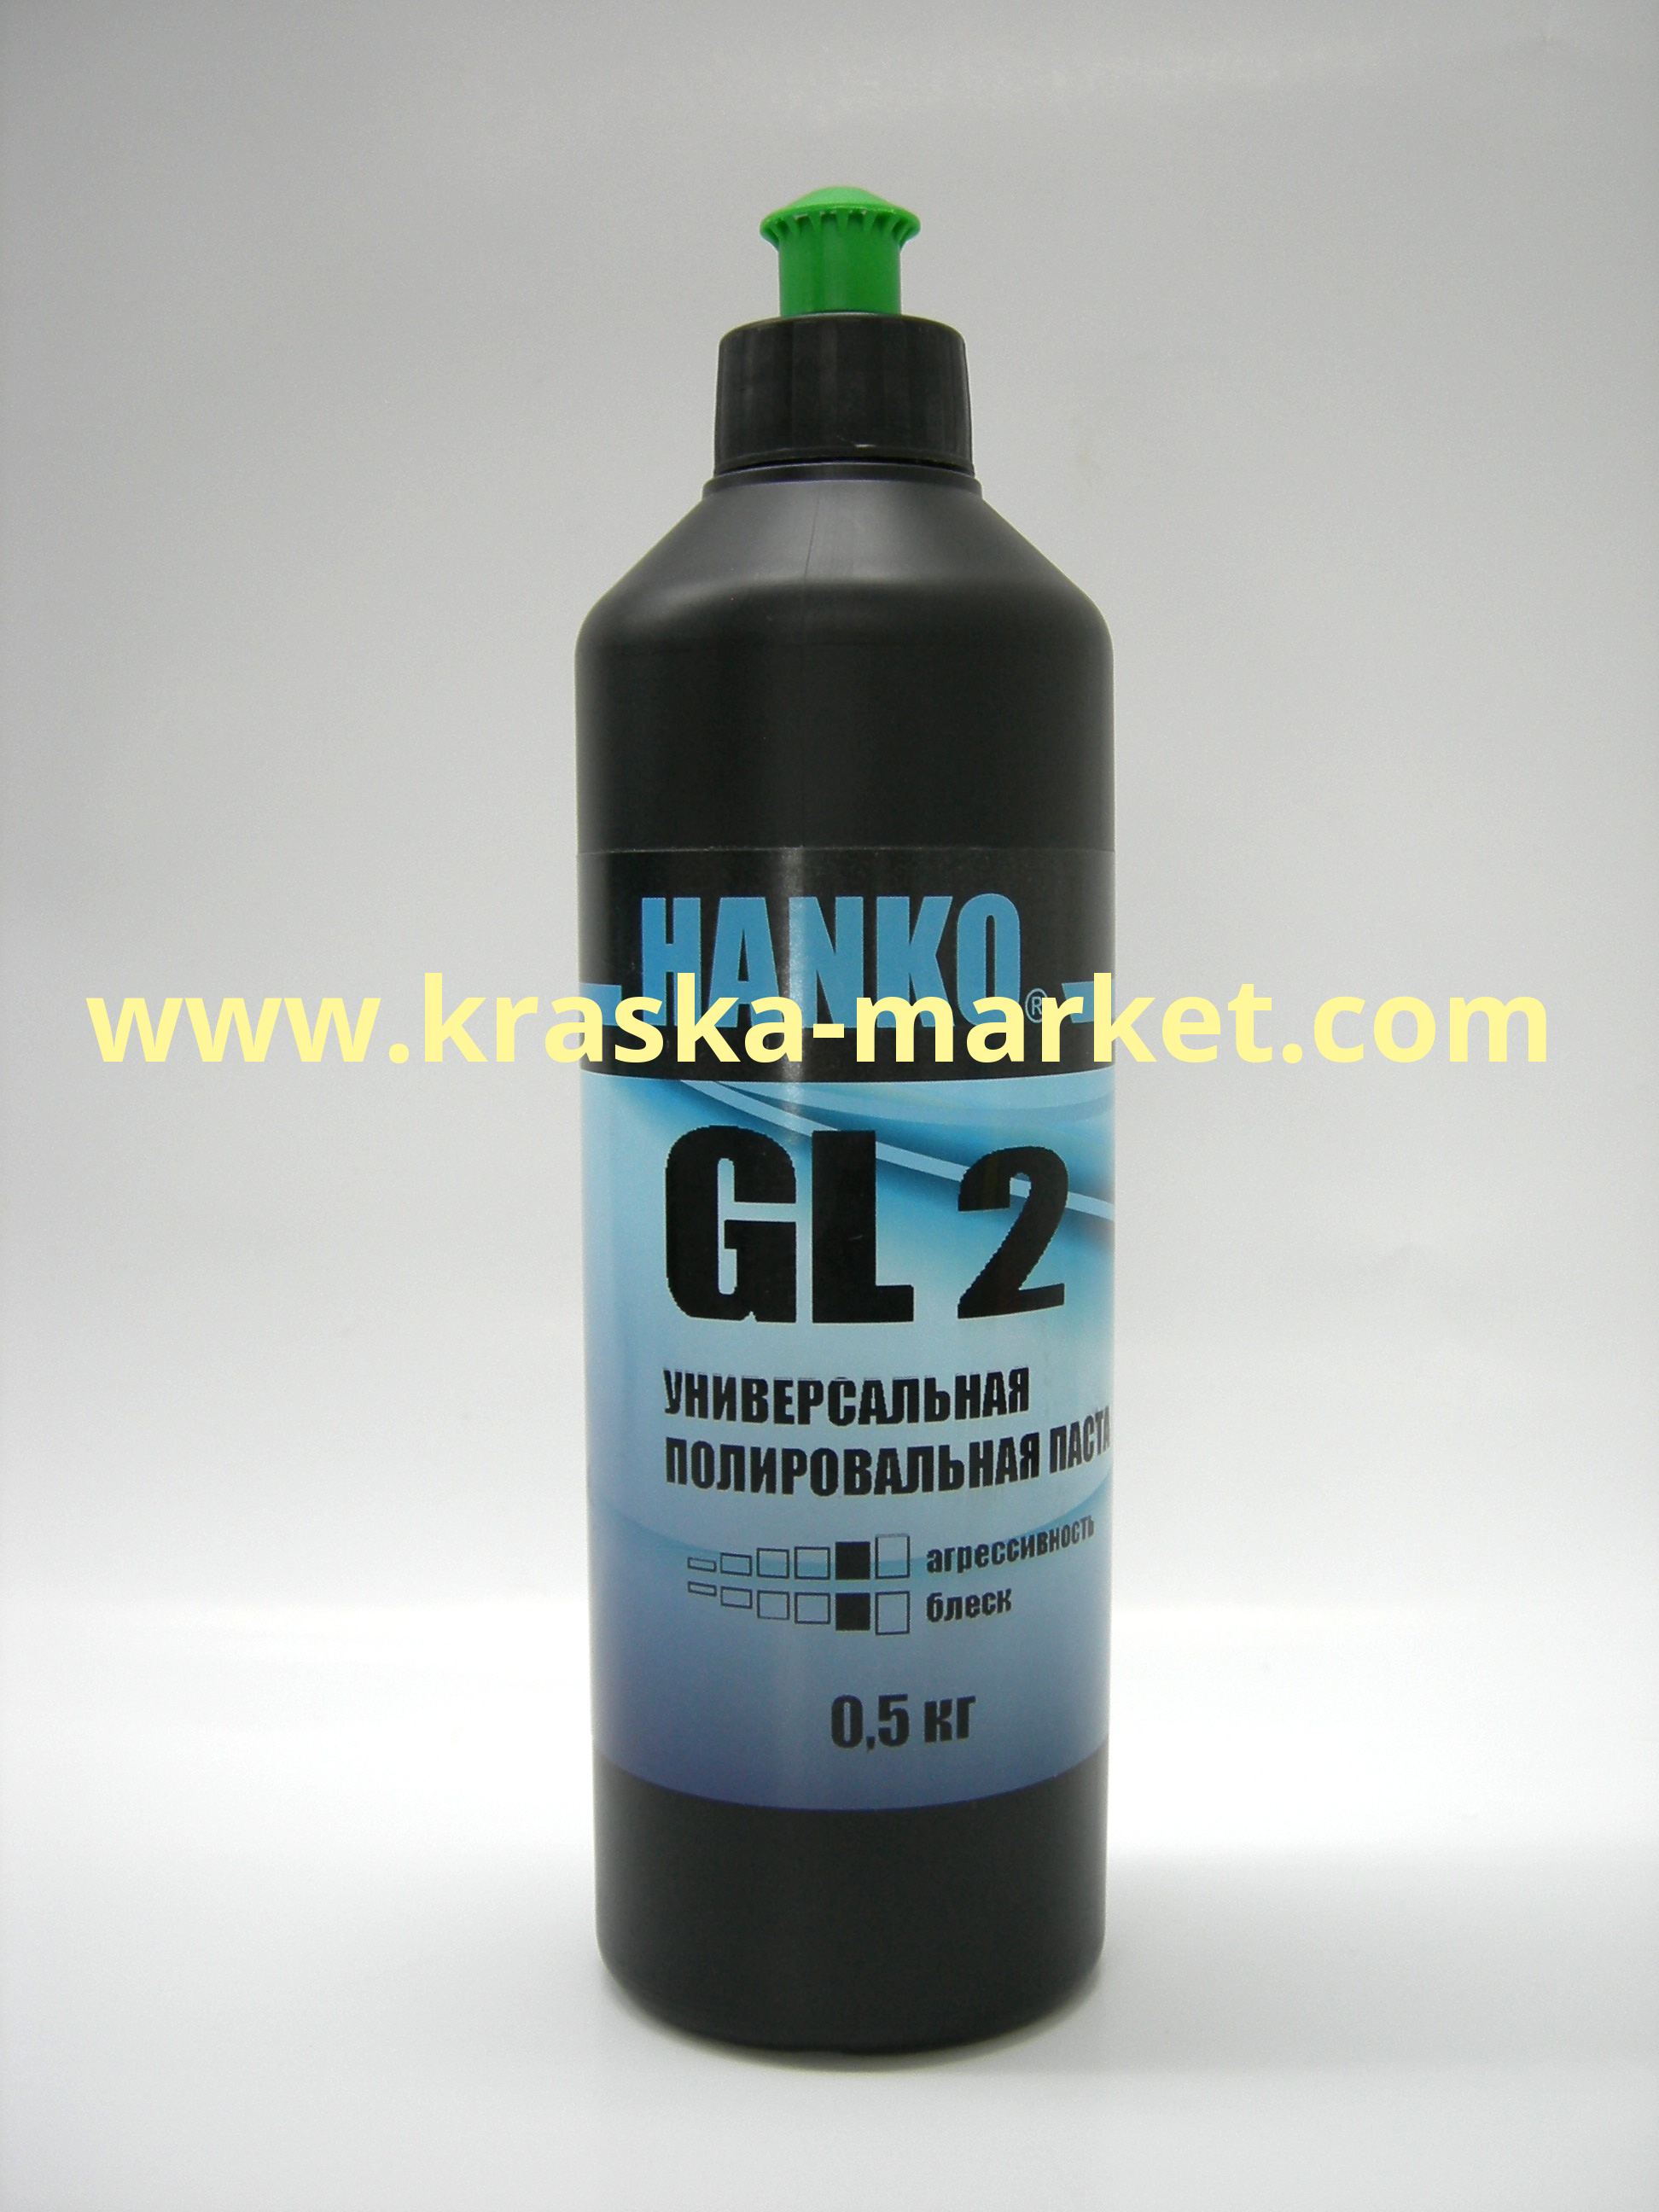 Универсальная полировальная паста GL2. Объем(м3): 0,5кг. Торговая марка: HANKO.